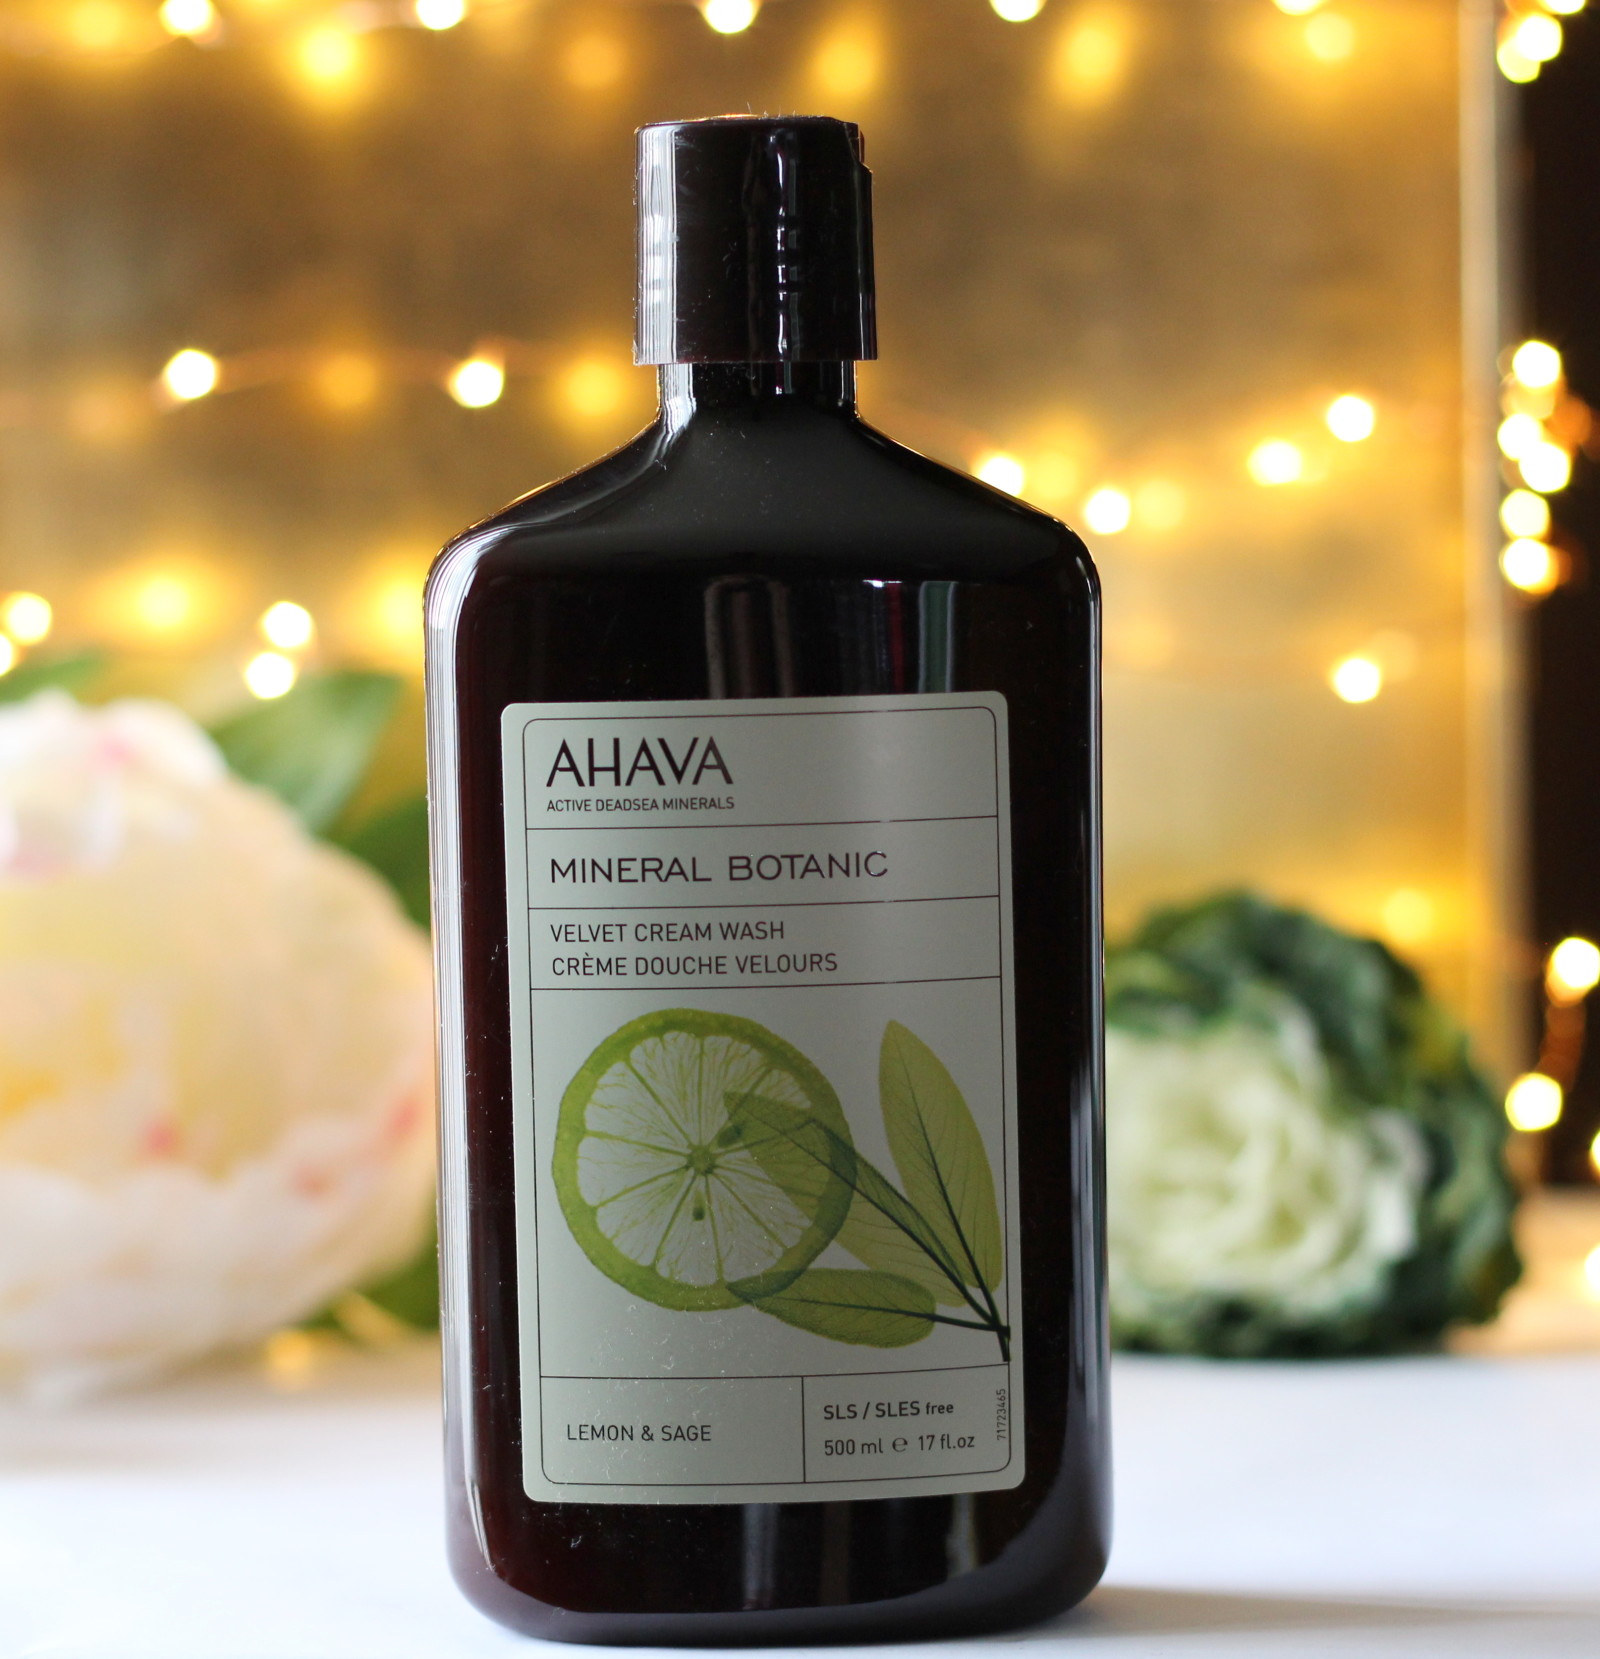 AHAVA Mineral Botanic Velvet Cream Wash, Body Lotion, Rich Body Butter & Hand Cream – Lemon & Sage